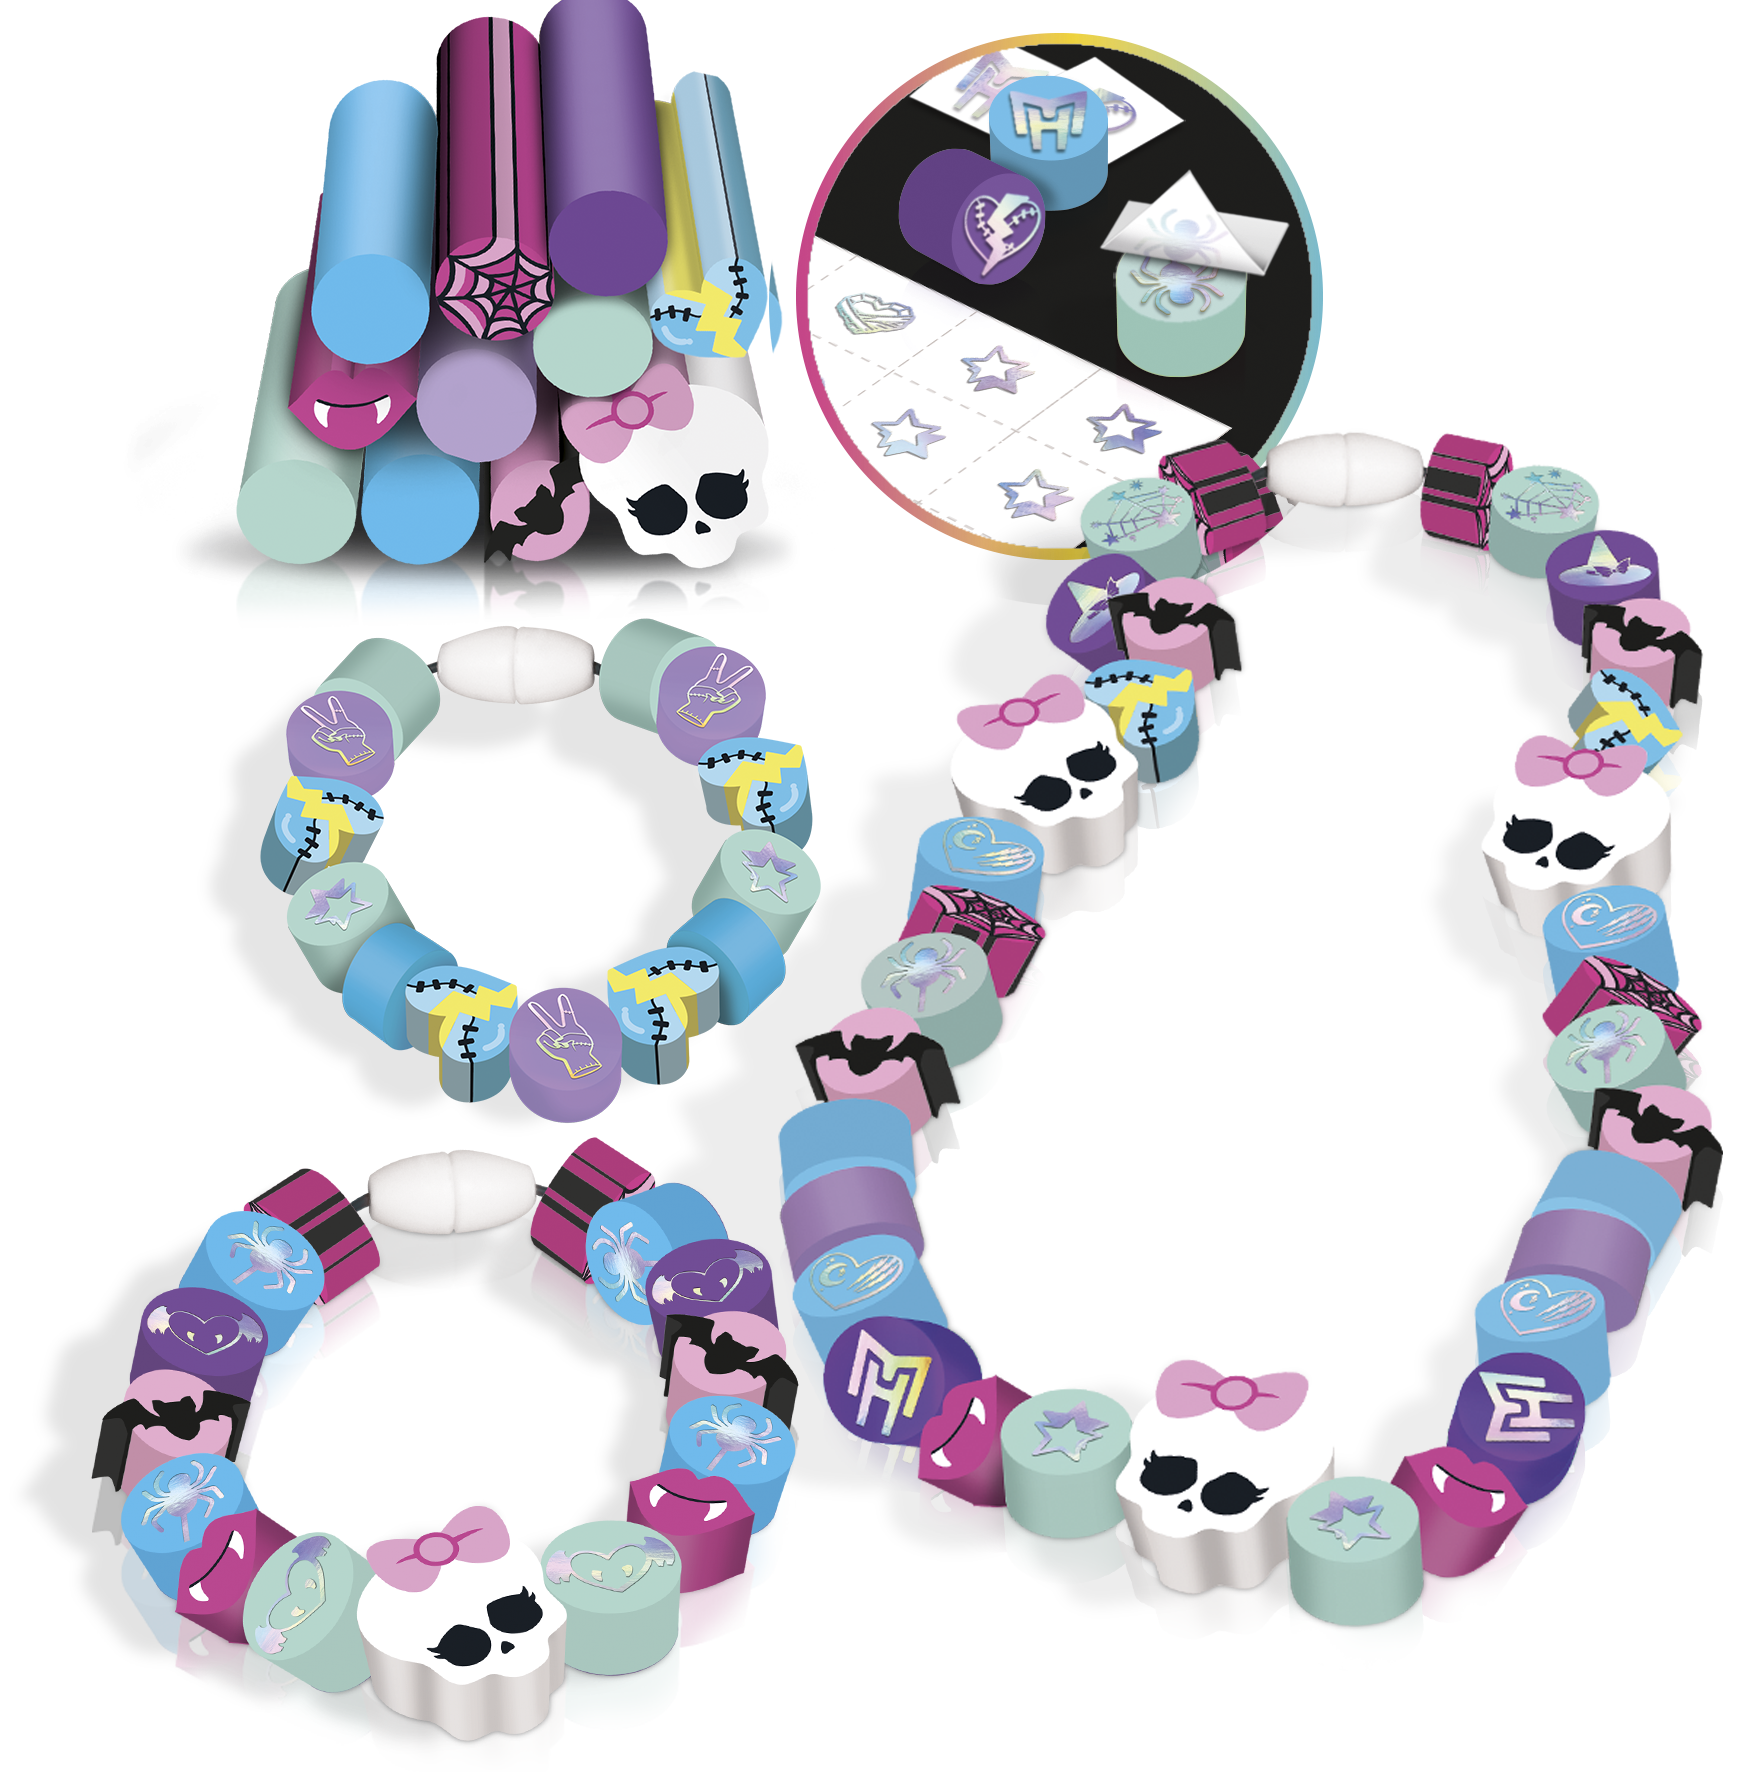 Cutie Stix recharge Monster High - La Grande Récré